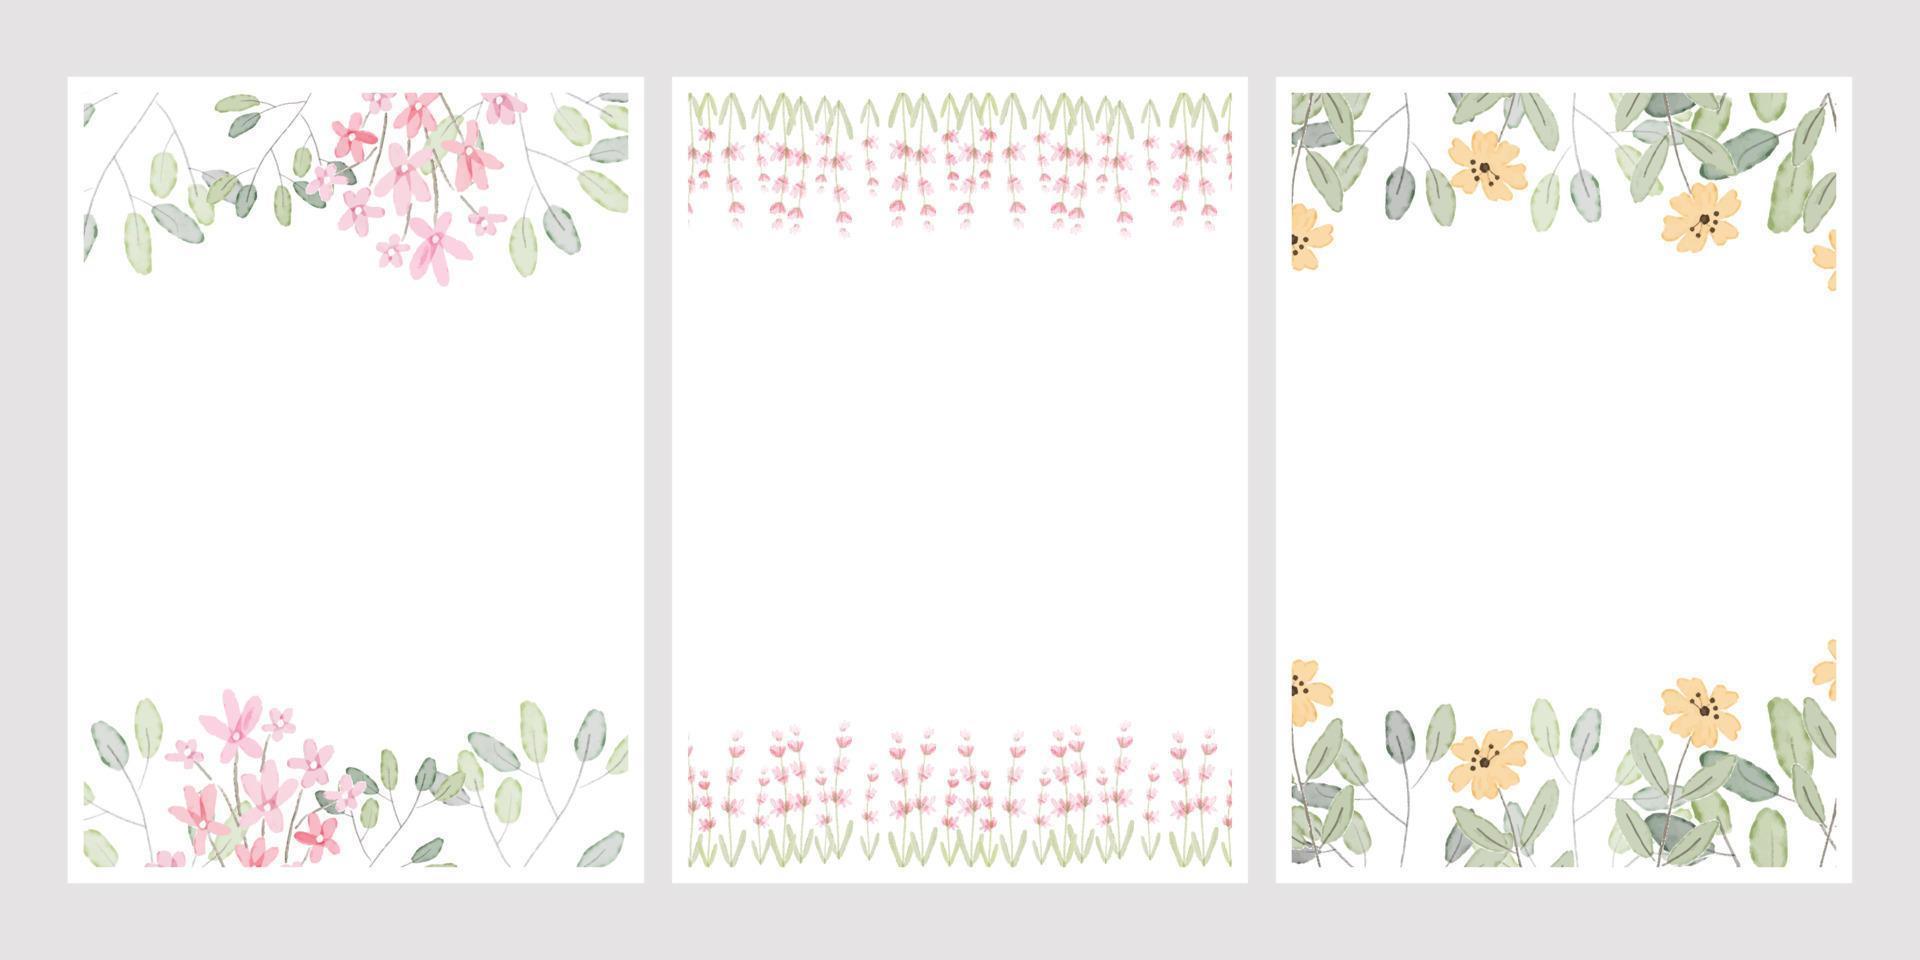 corona di foglie di disegno a mano botanica dell'acquerello con piccoli fiori rosa e gialli collezione di modello 5x7 della carta dell'invito di nozze vettore